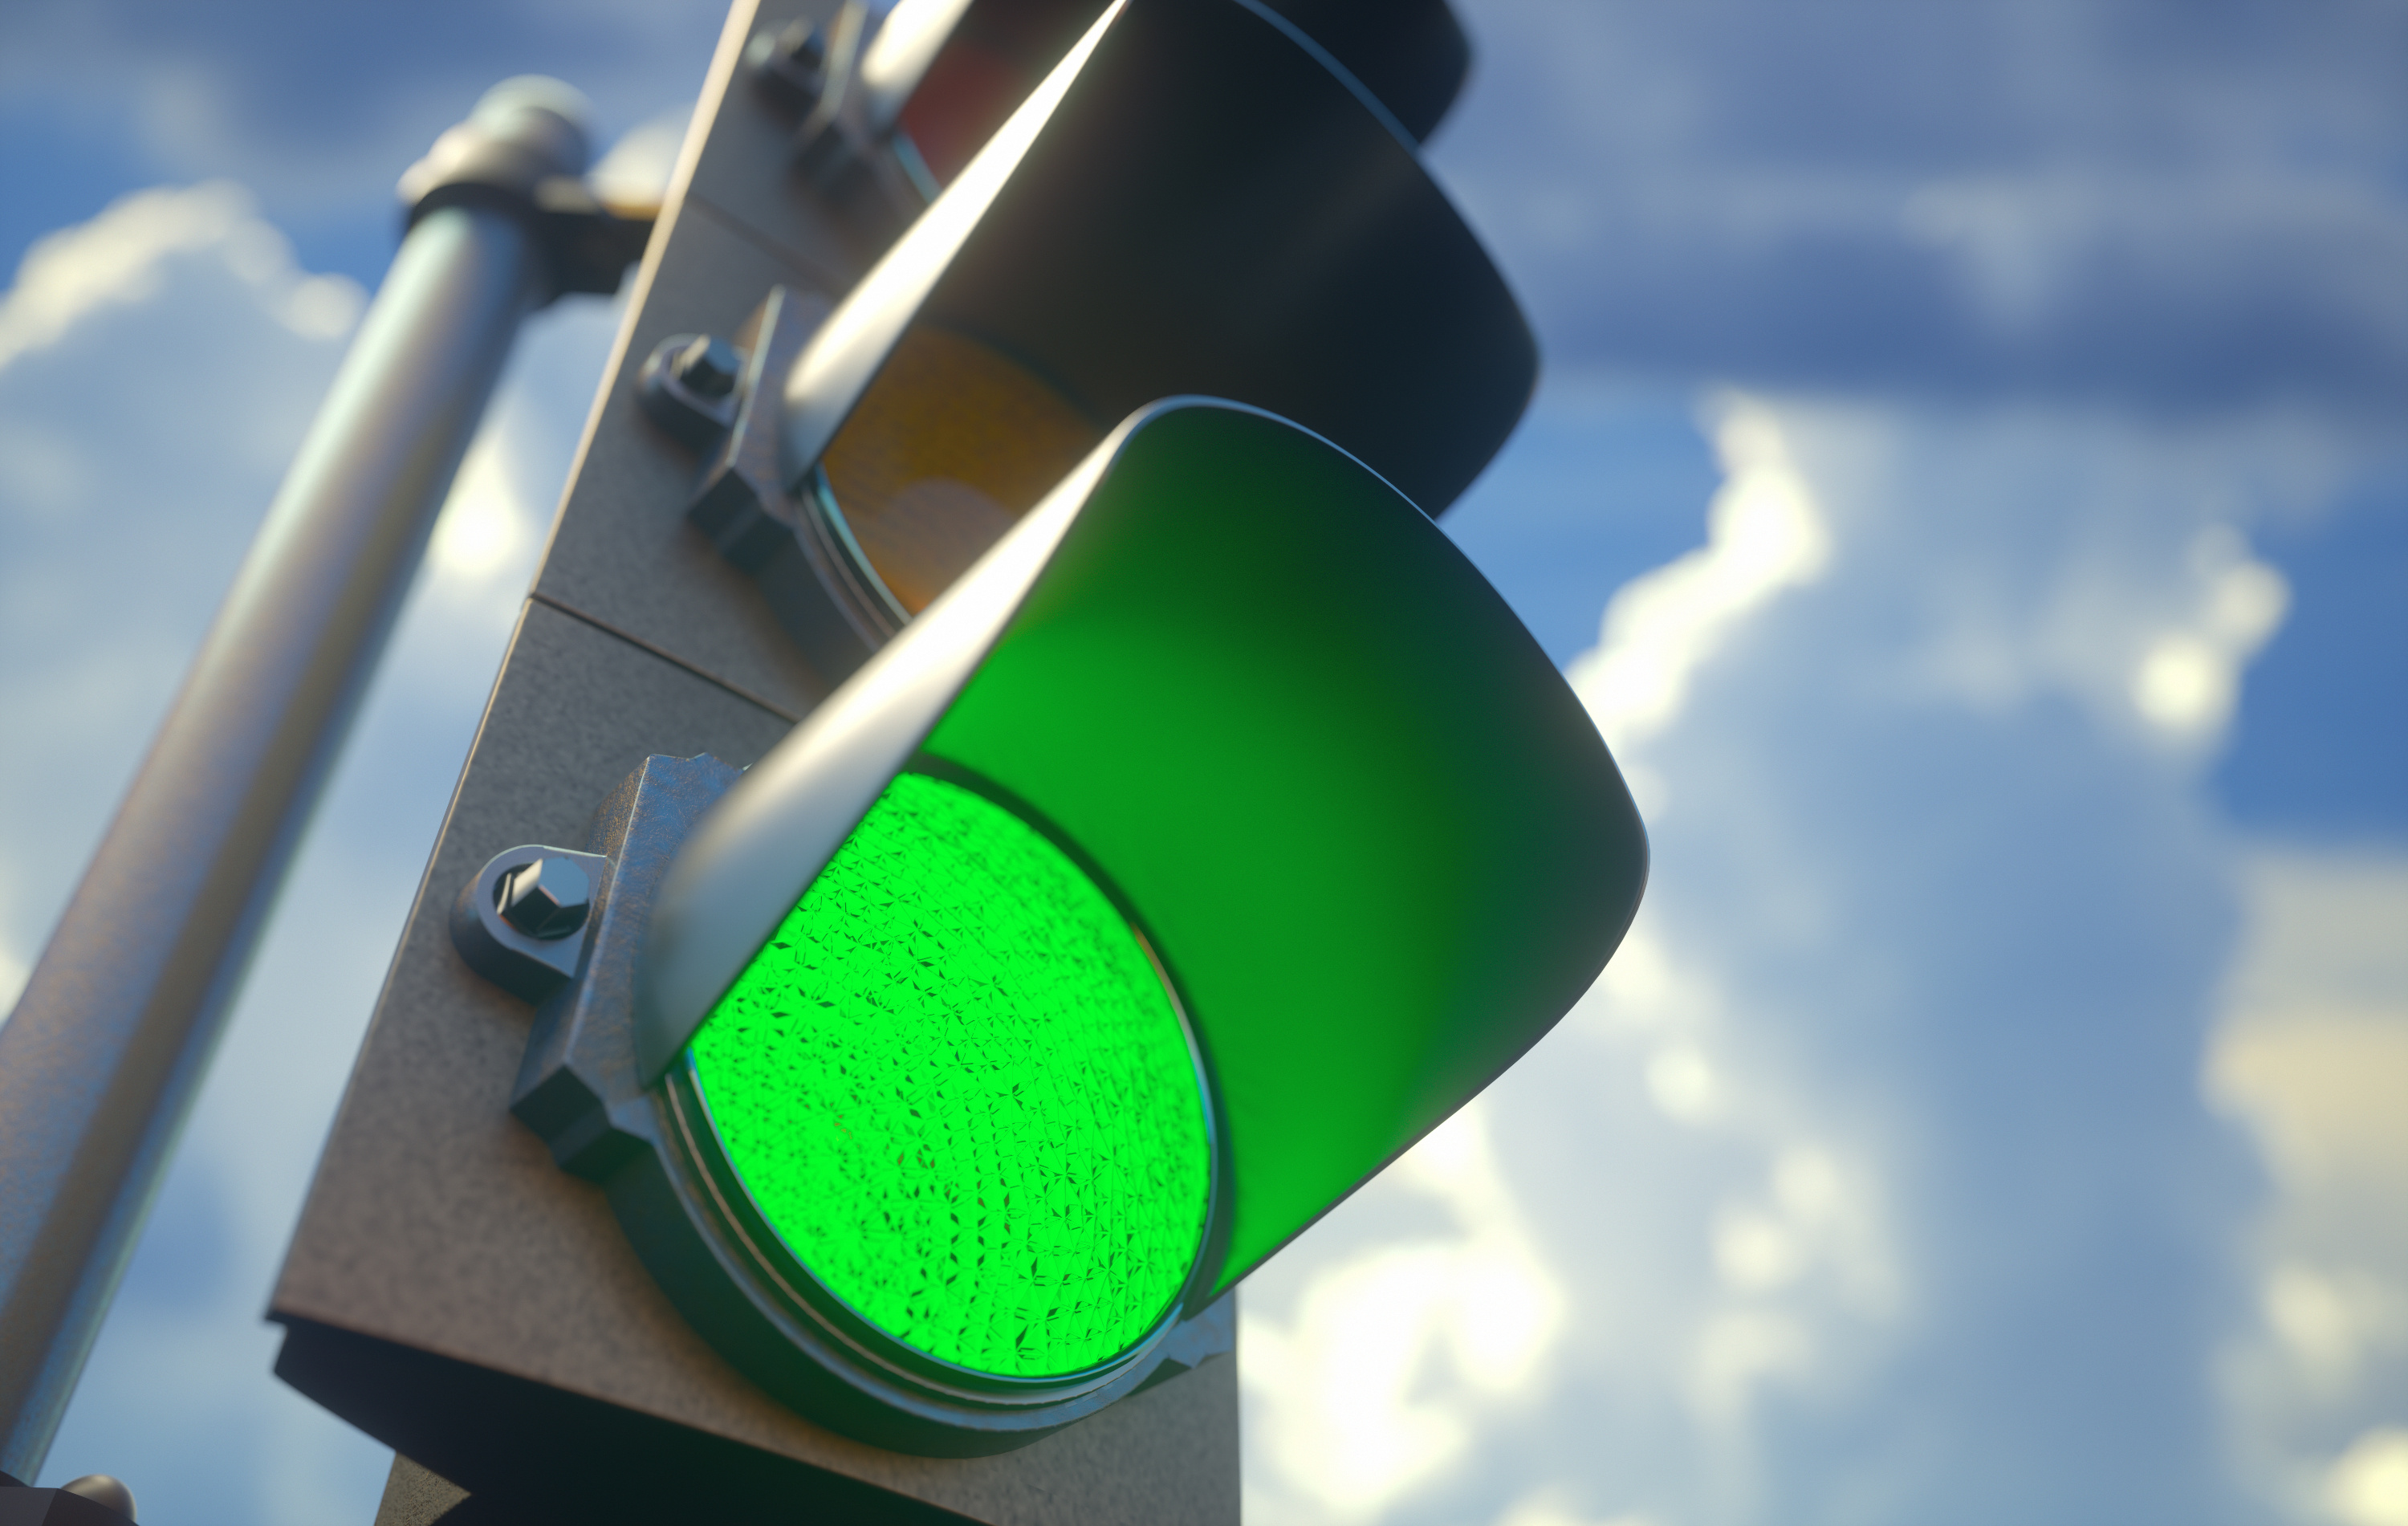 Светофоры всегда зеленые. Зеленый светофор. Зеленый свет. Зеленый цвет светофора. Зеленый свет светофора.